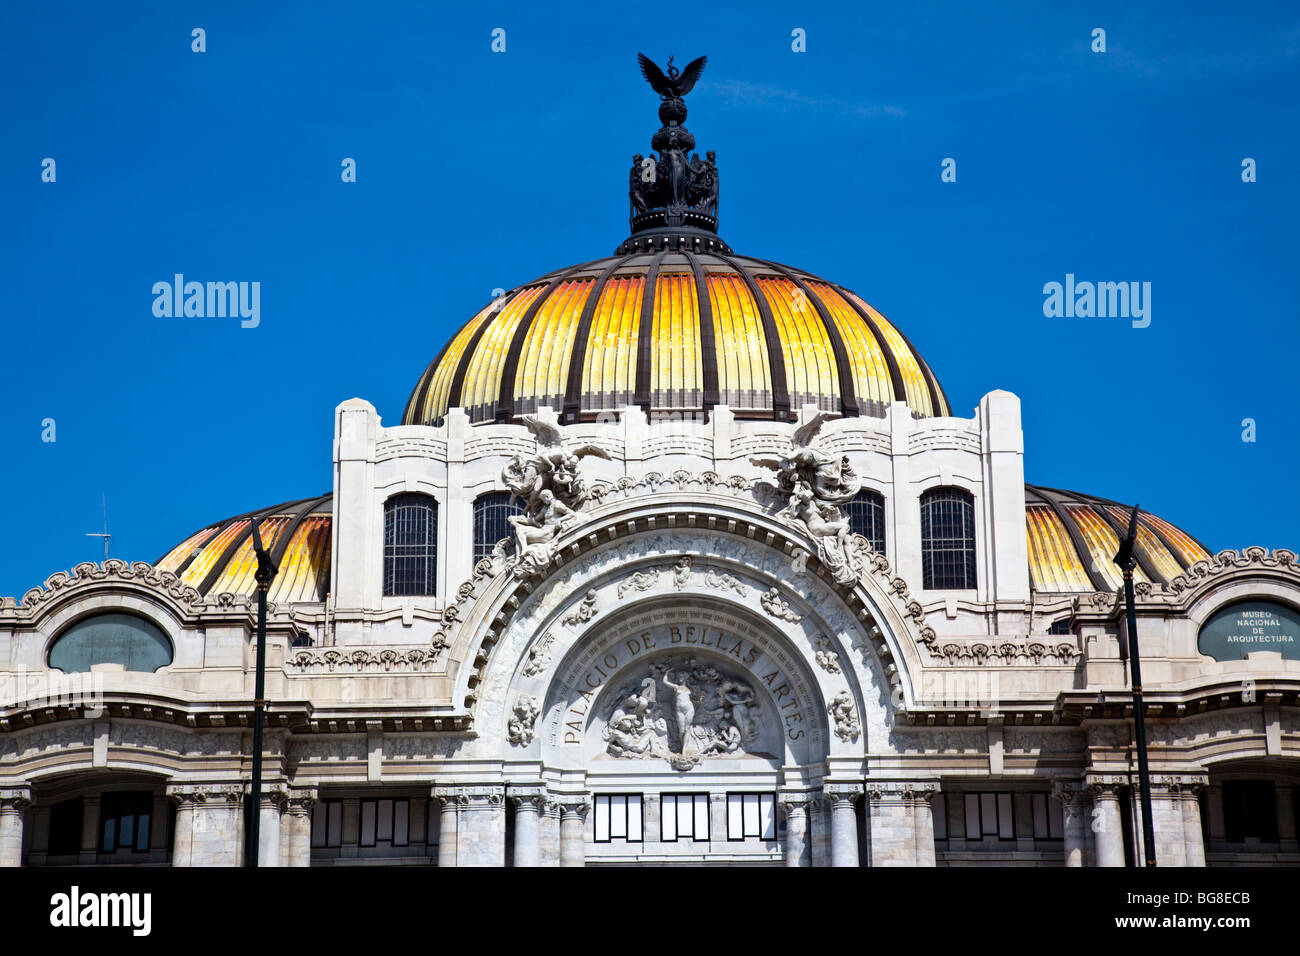 Palacio de Bellas Artes in Mexico City Stock Photo